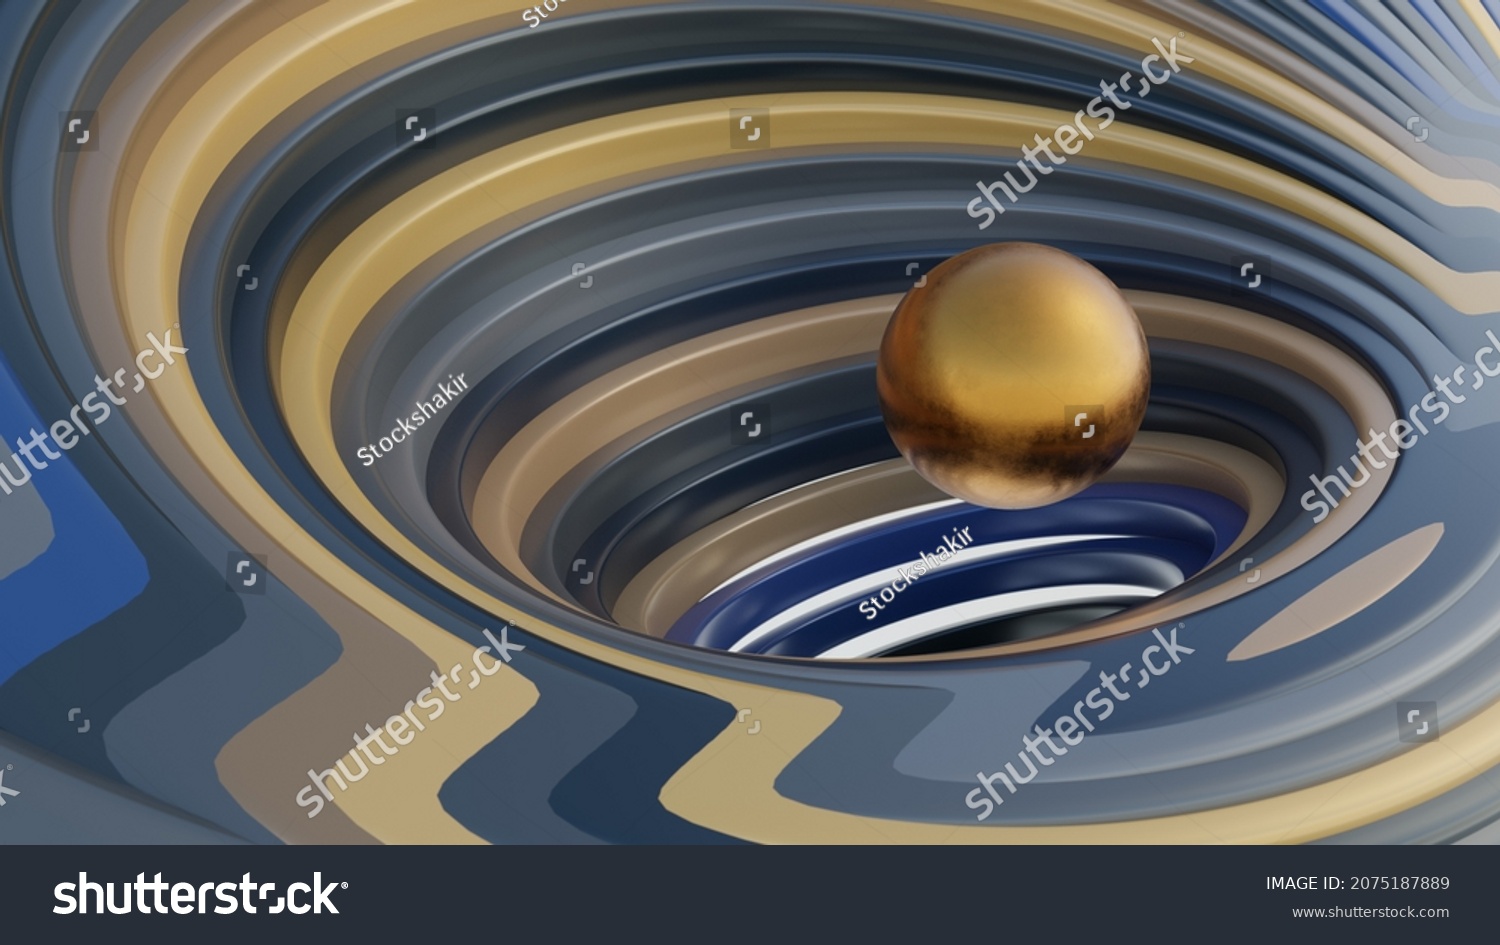 Fractal digital 3D design.Abstract fractal shape of spiral blue gold brown vortex swirling around the levitating golden sphere. #2075187889